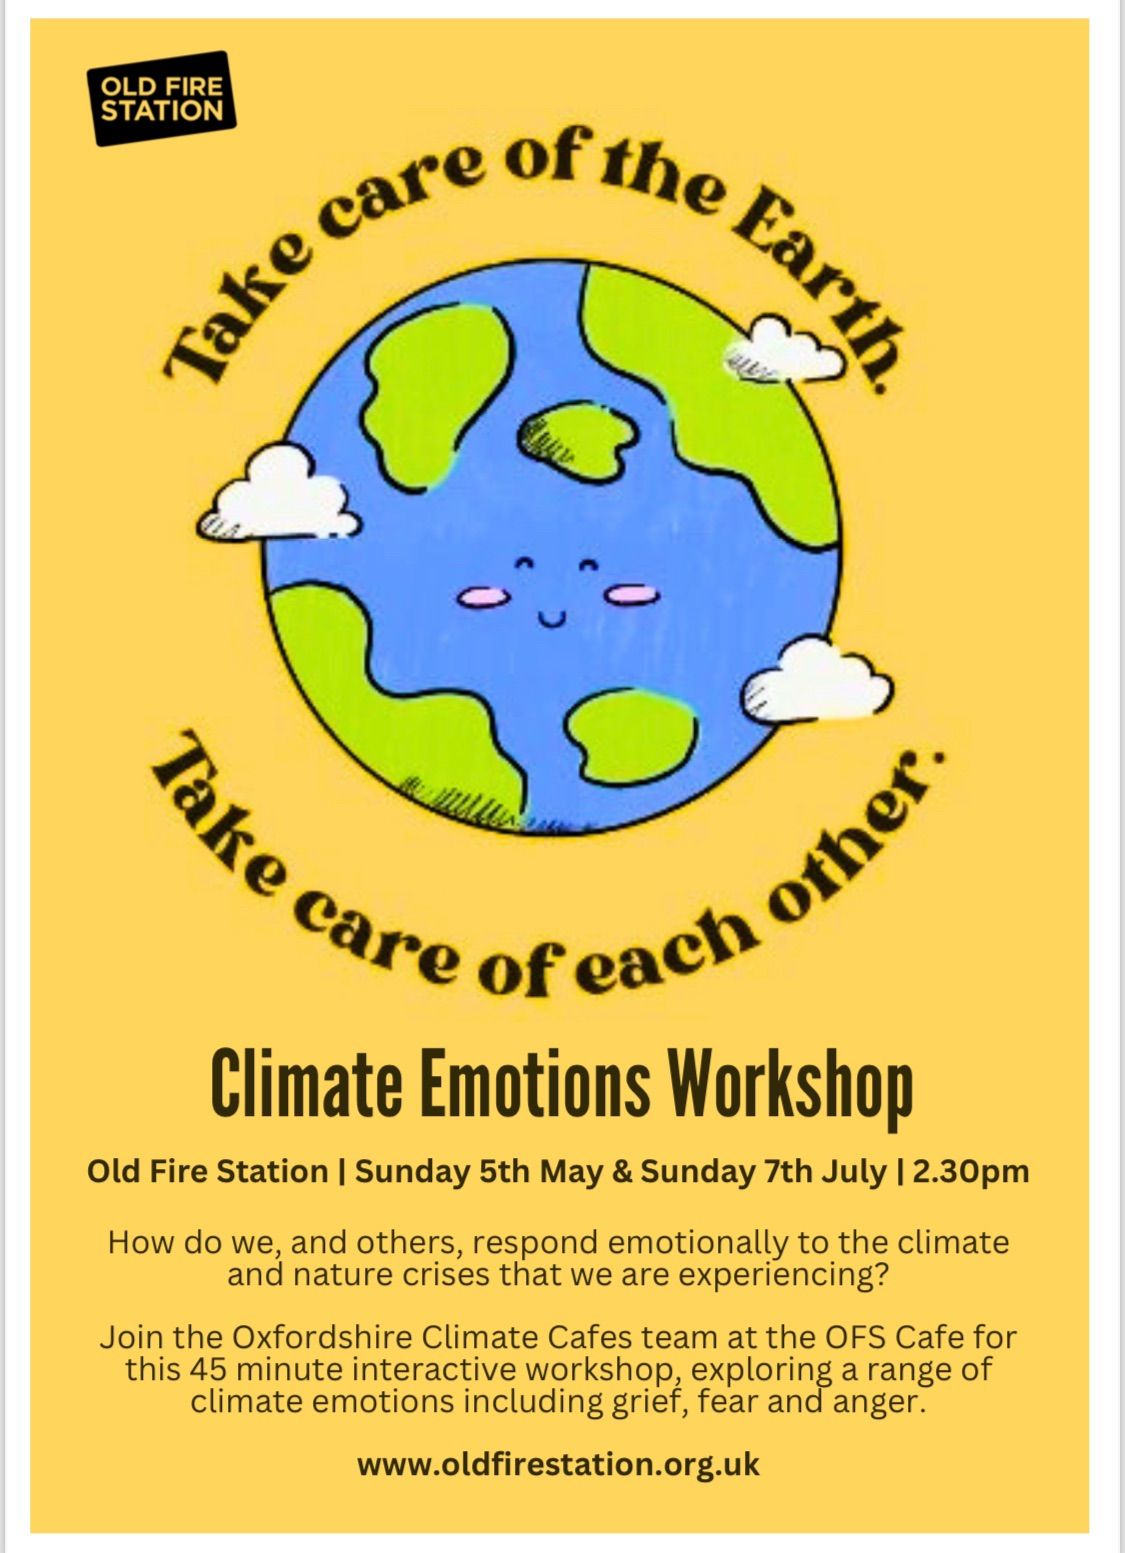 Climate emotions workshop